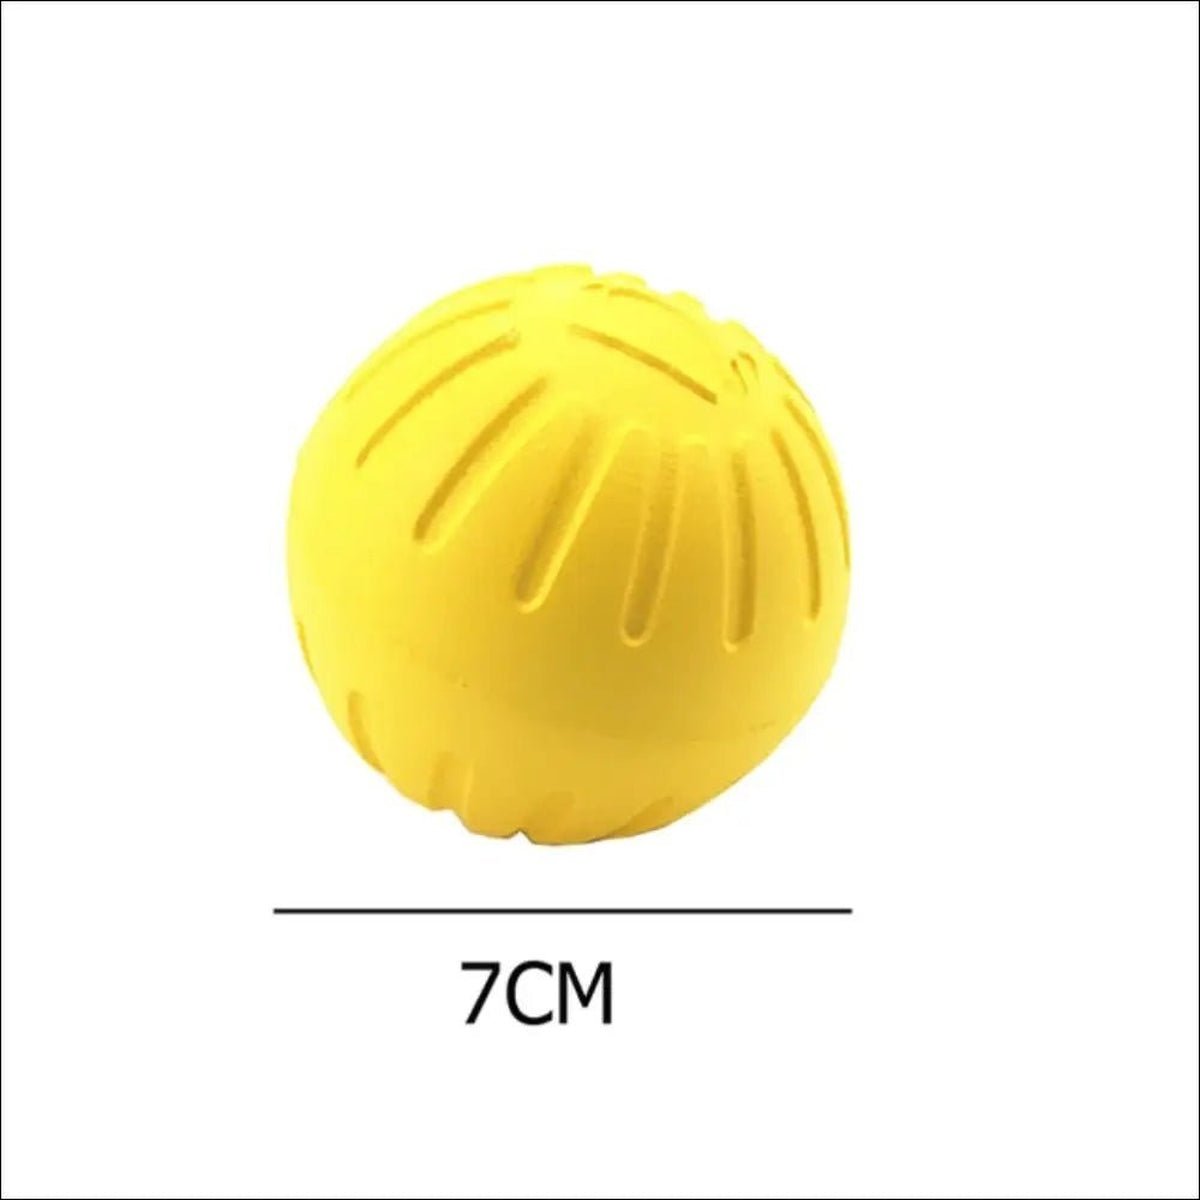 Jouet D'entraînement En Caoutchouc Pour Chiens - CJJJCWGY00762 - Solid ball - 7cm - Balles - Chienalafolie